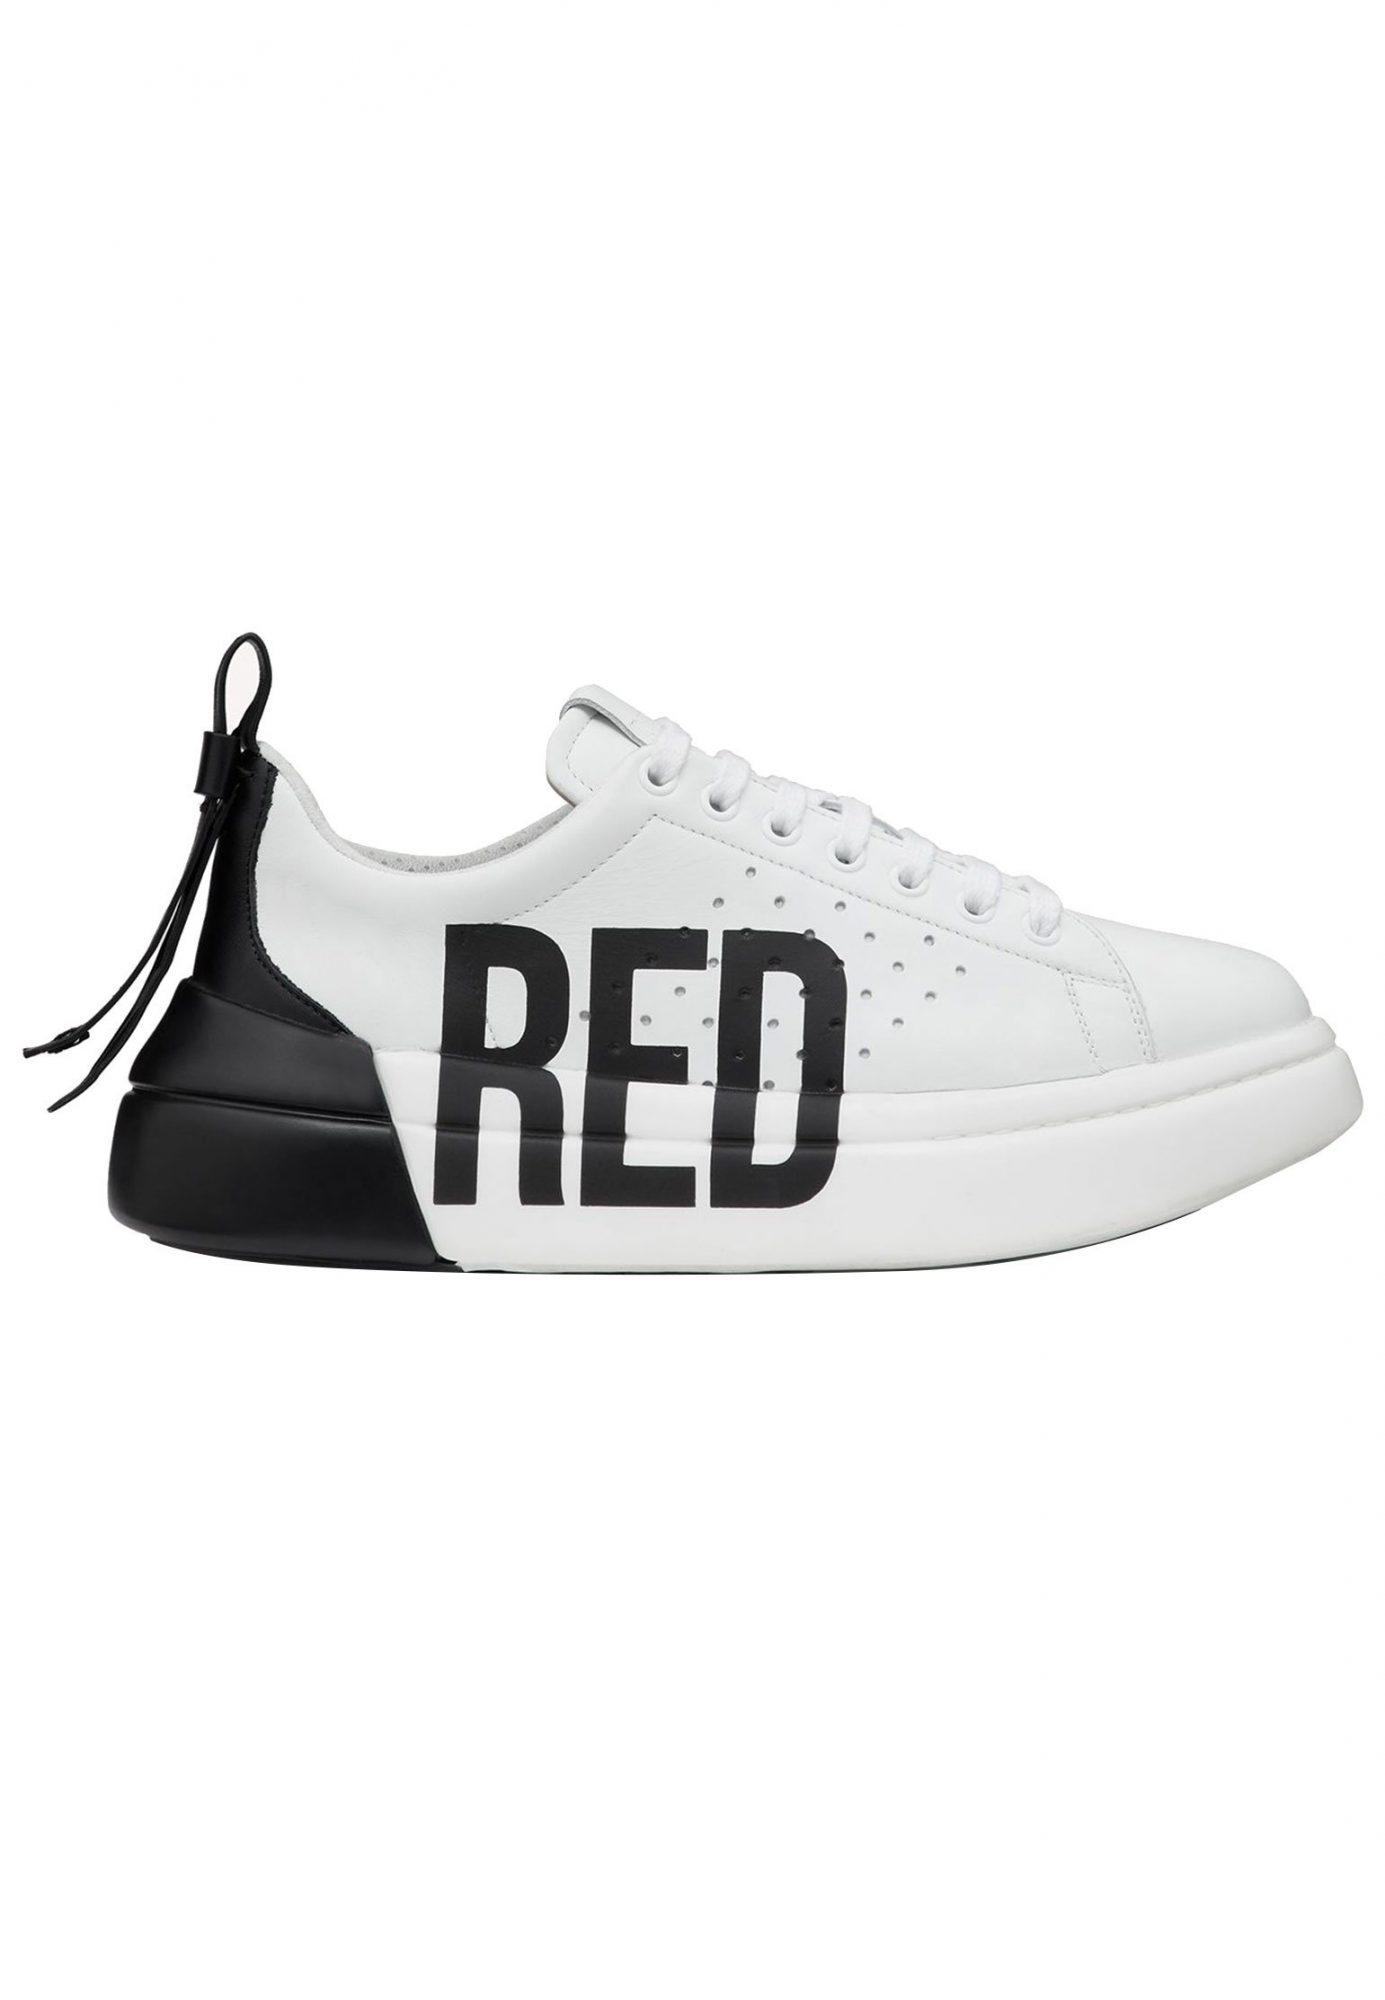 Кеды VALENTINO RED женские, цвет Белый, купить с доставкой - сравнить цены  в интернет-магазинах на elstilisto